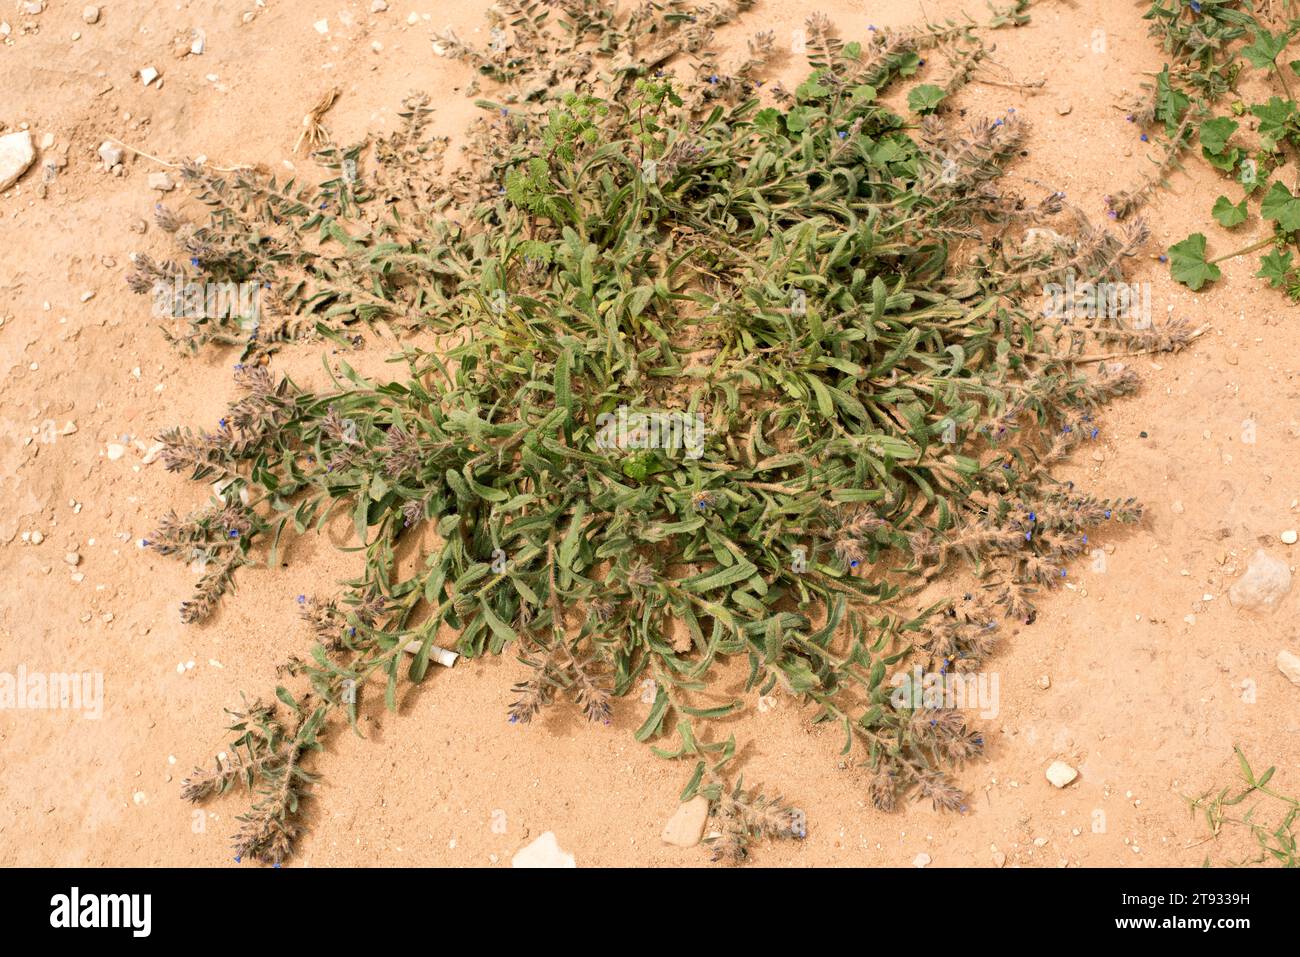 Alkanet (Alkanna tinctoria), le sue radici sono usate come colorante rosso. Wadi Rum Desert, Giordania. Foto Stock